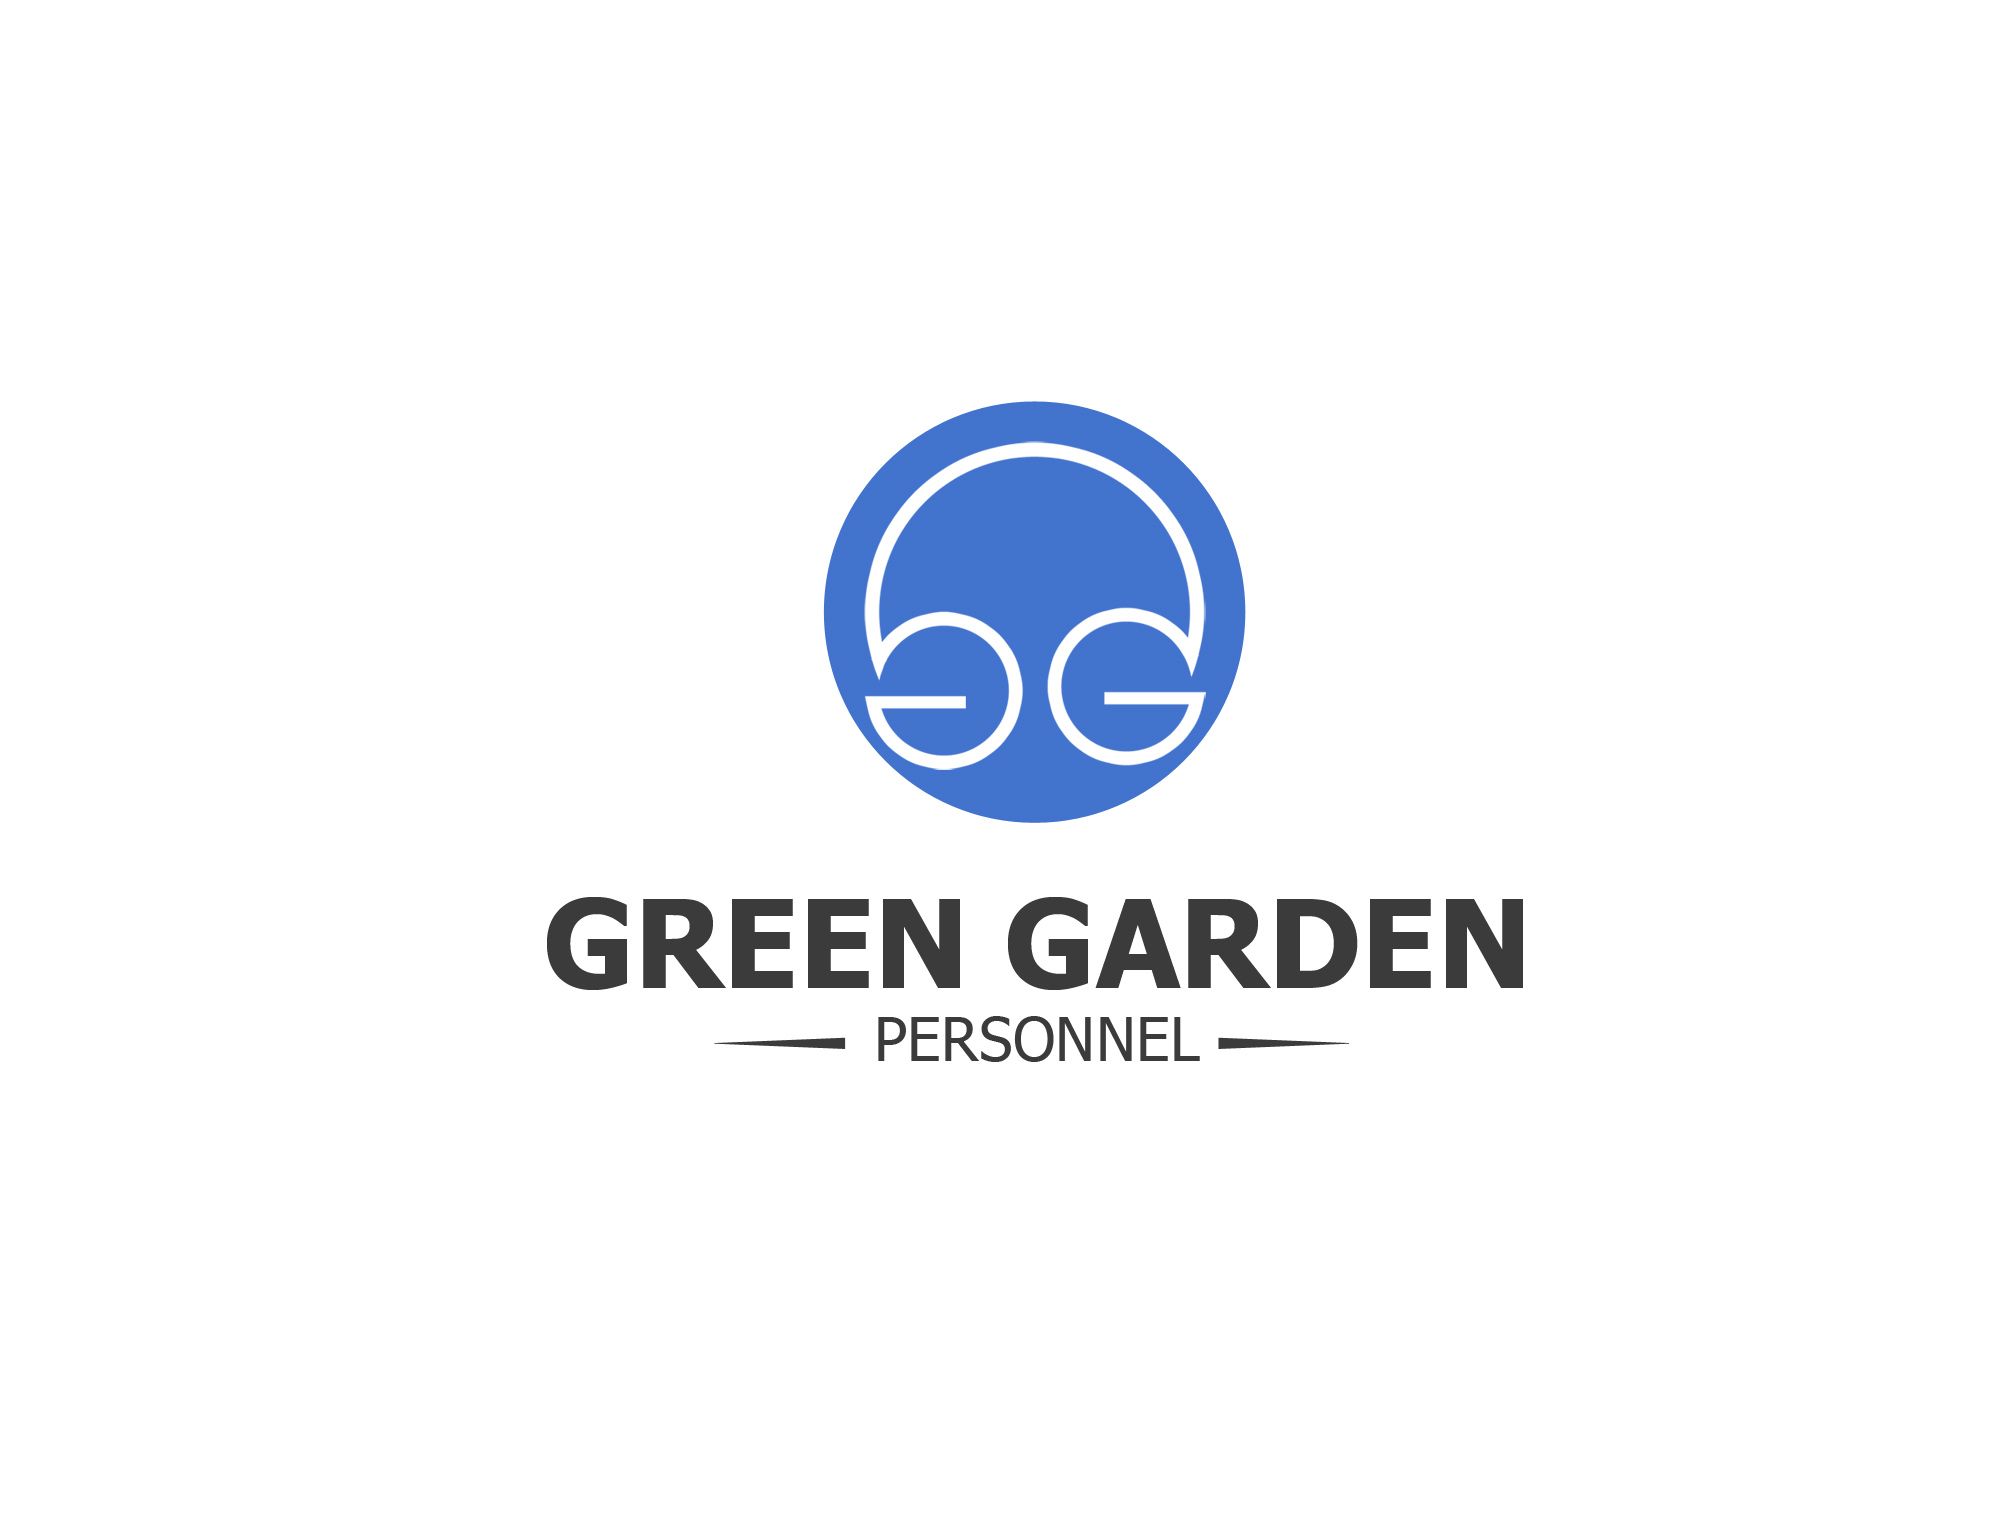  Фирм. стиль для Green Garden Personnel - дизайнер weste32